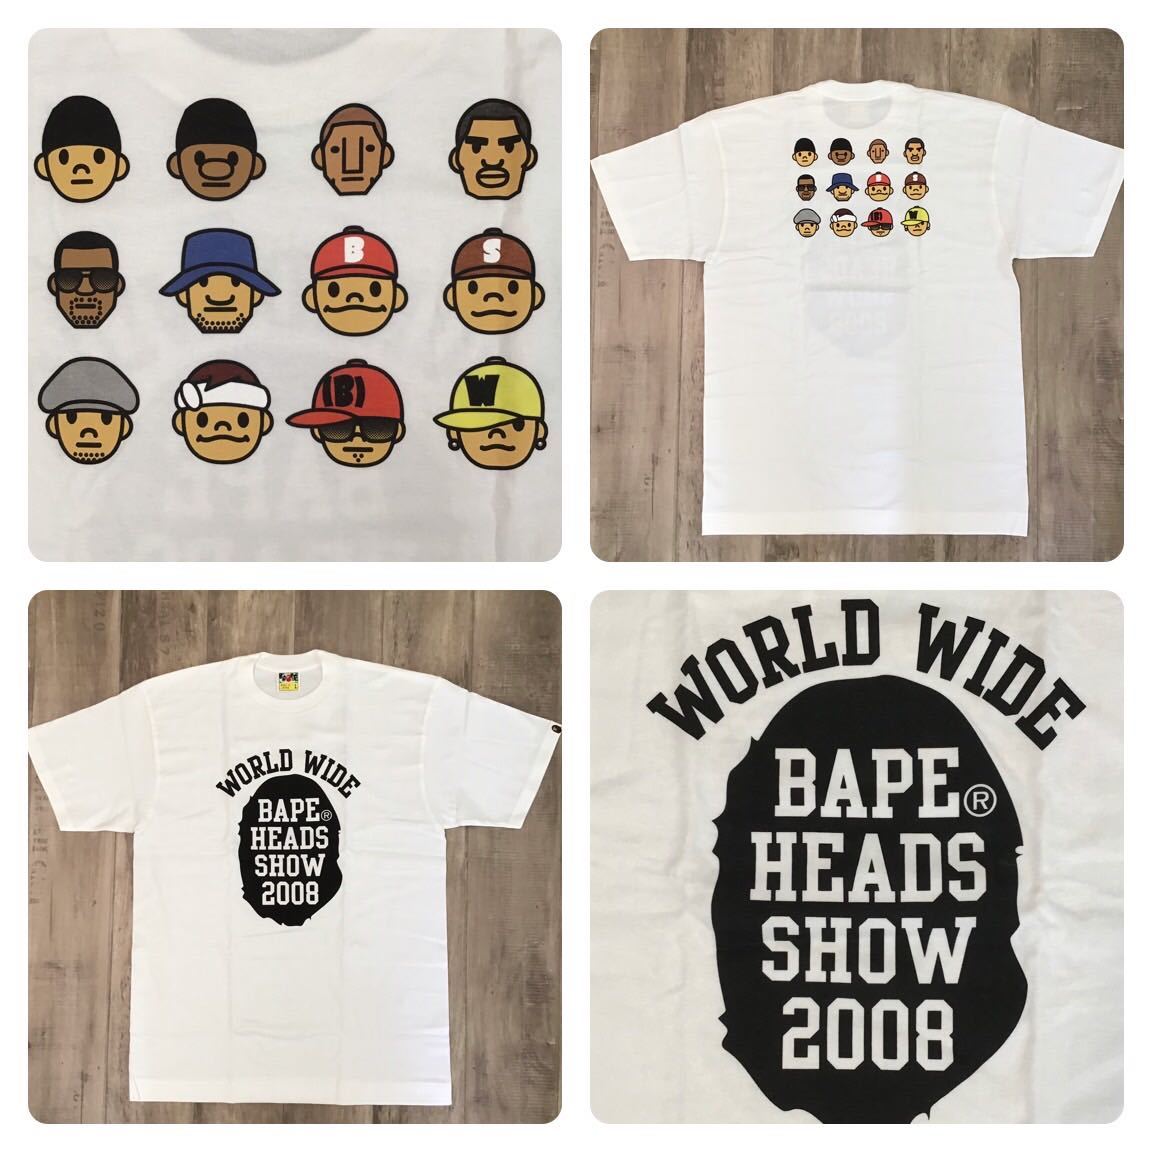 ★新品★ bape heads show 2008 Tシャツ Lサイズ a bathing ape kanye pharrell nerd teriyaki boys nigo エイプ ベイプ テリヤキ zs39